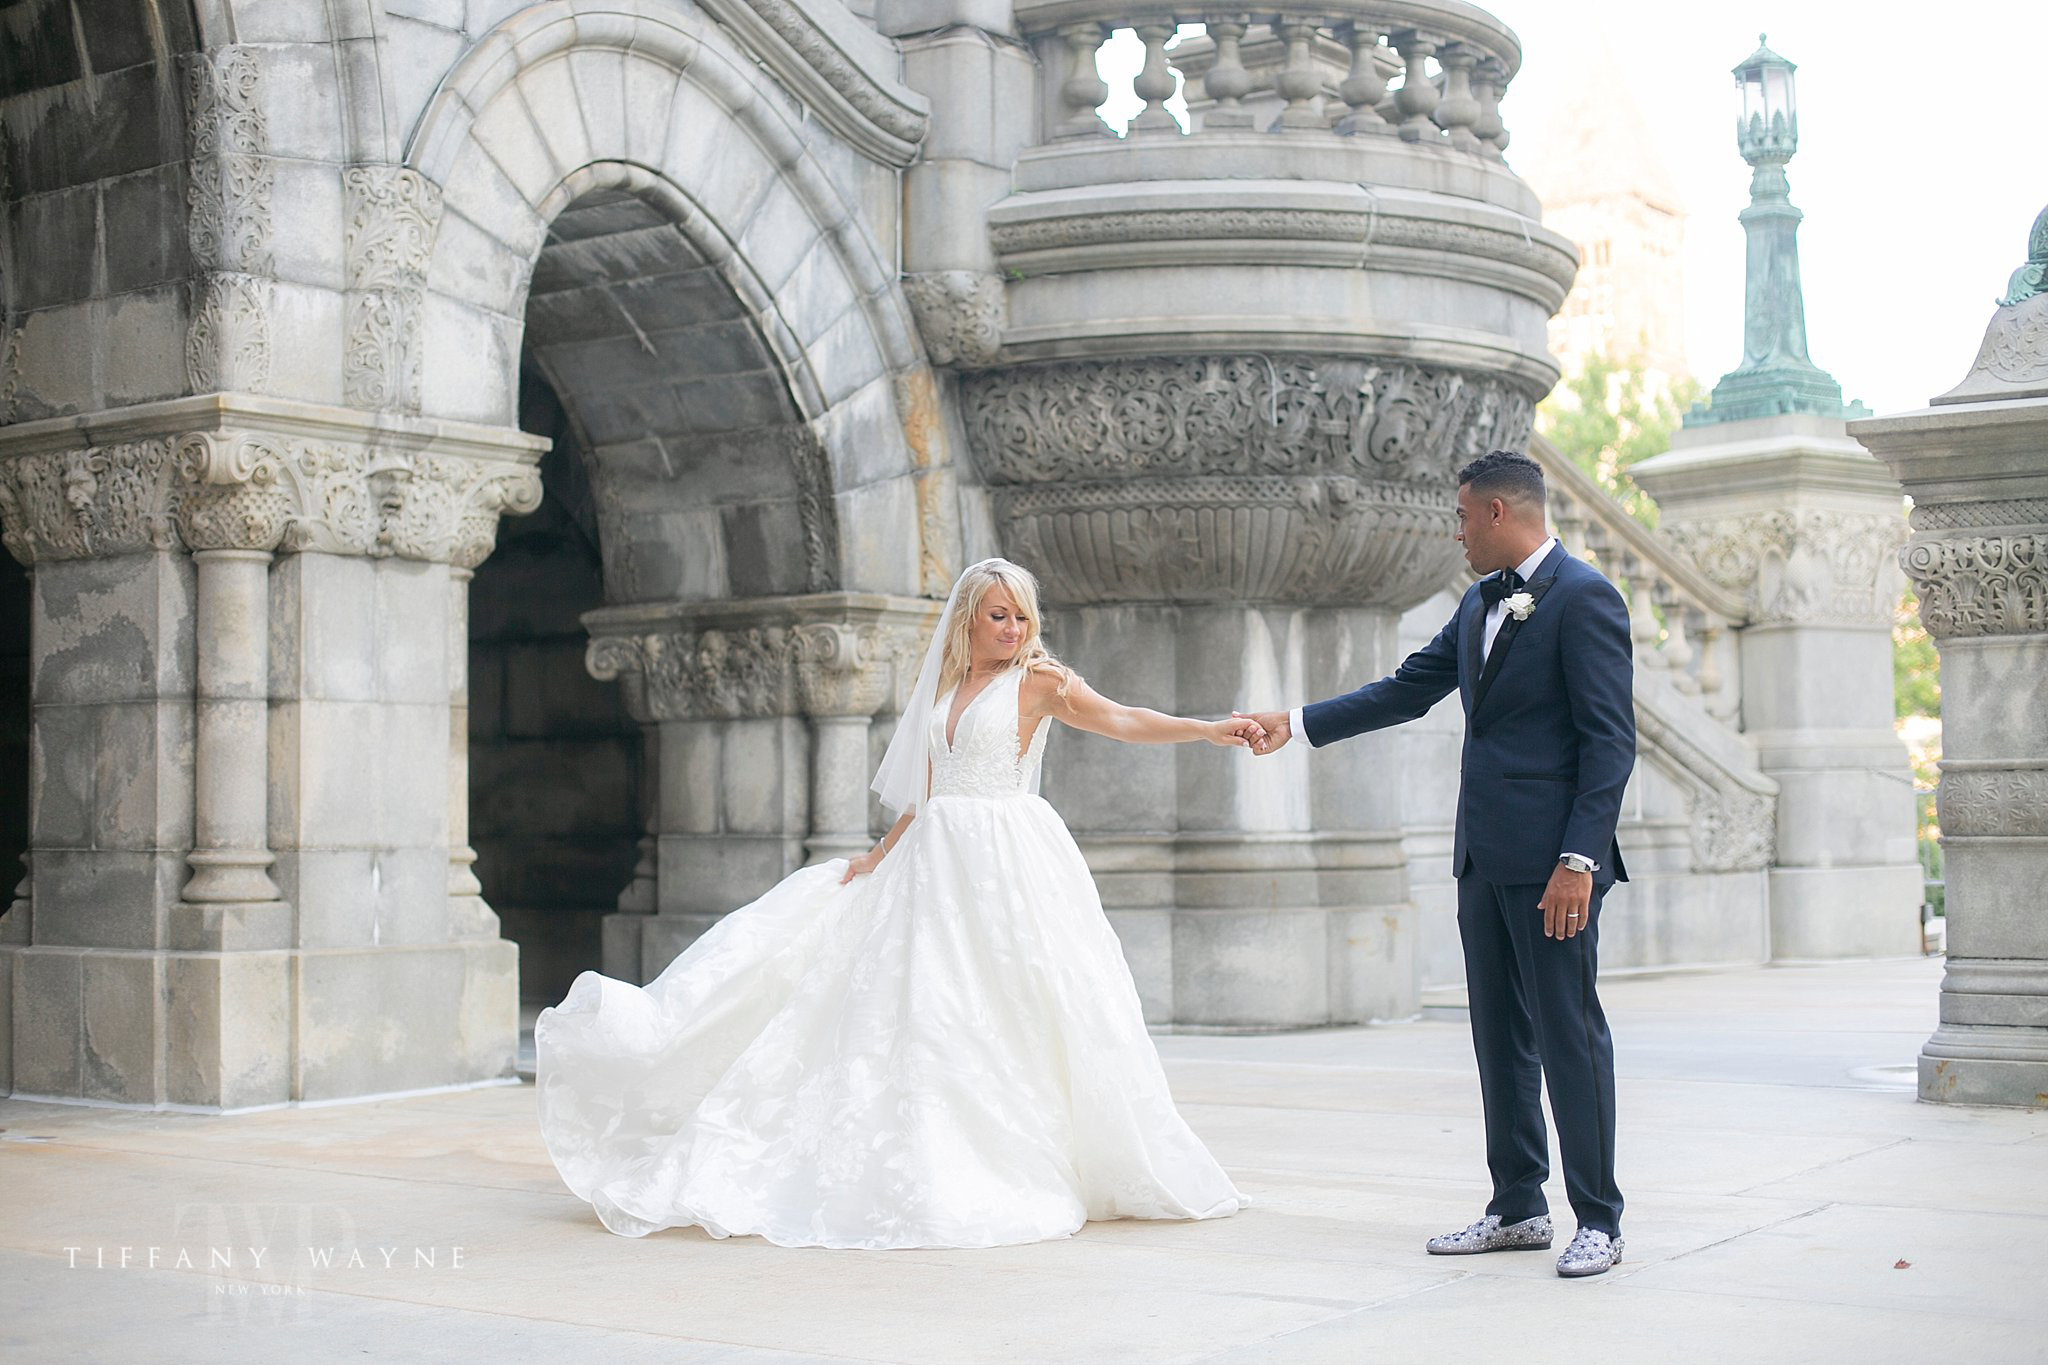 Tiffany Wayne Photography captures Albany NY wedding portraits 